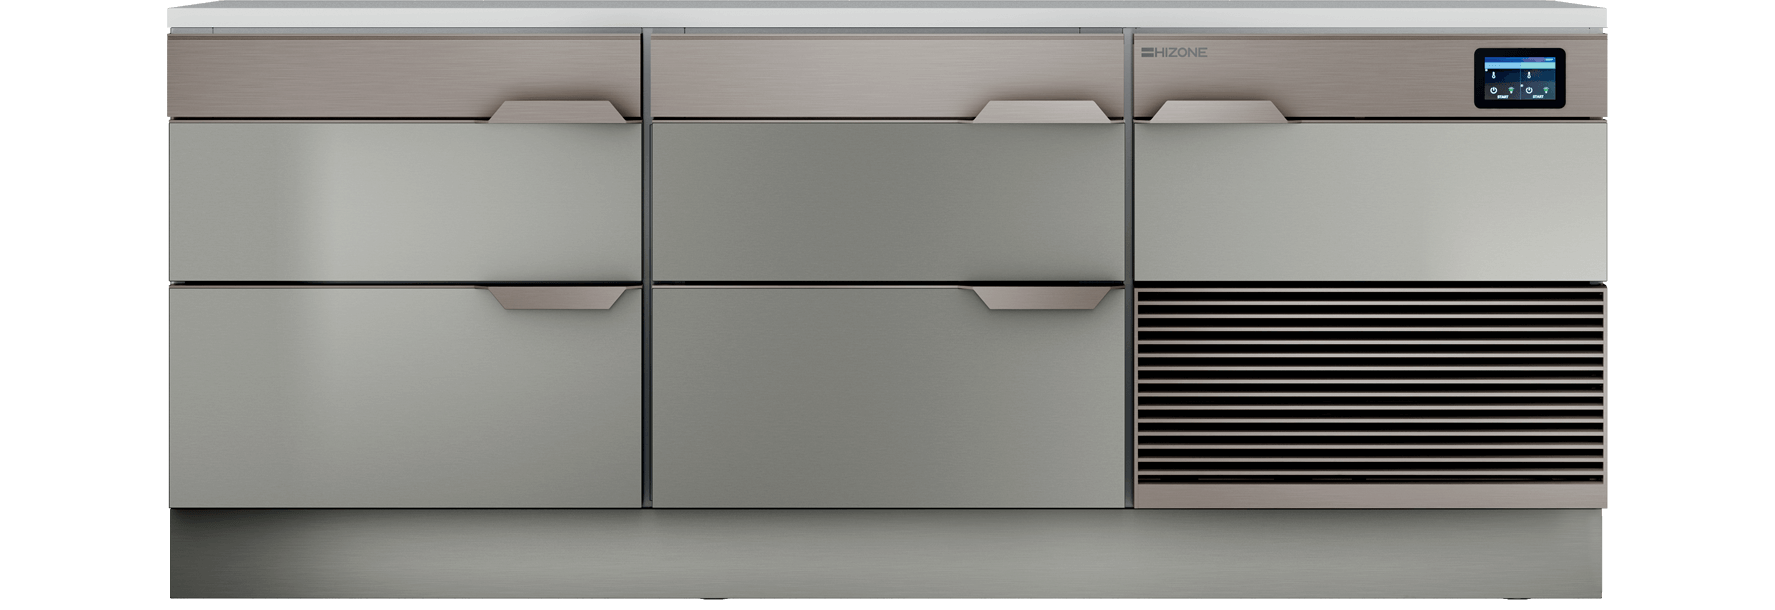 Hizone - Top chef drawers 2